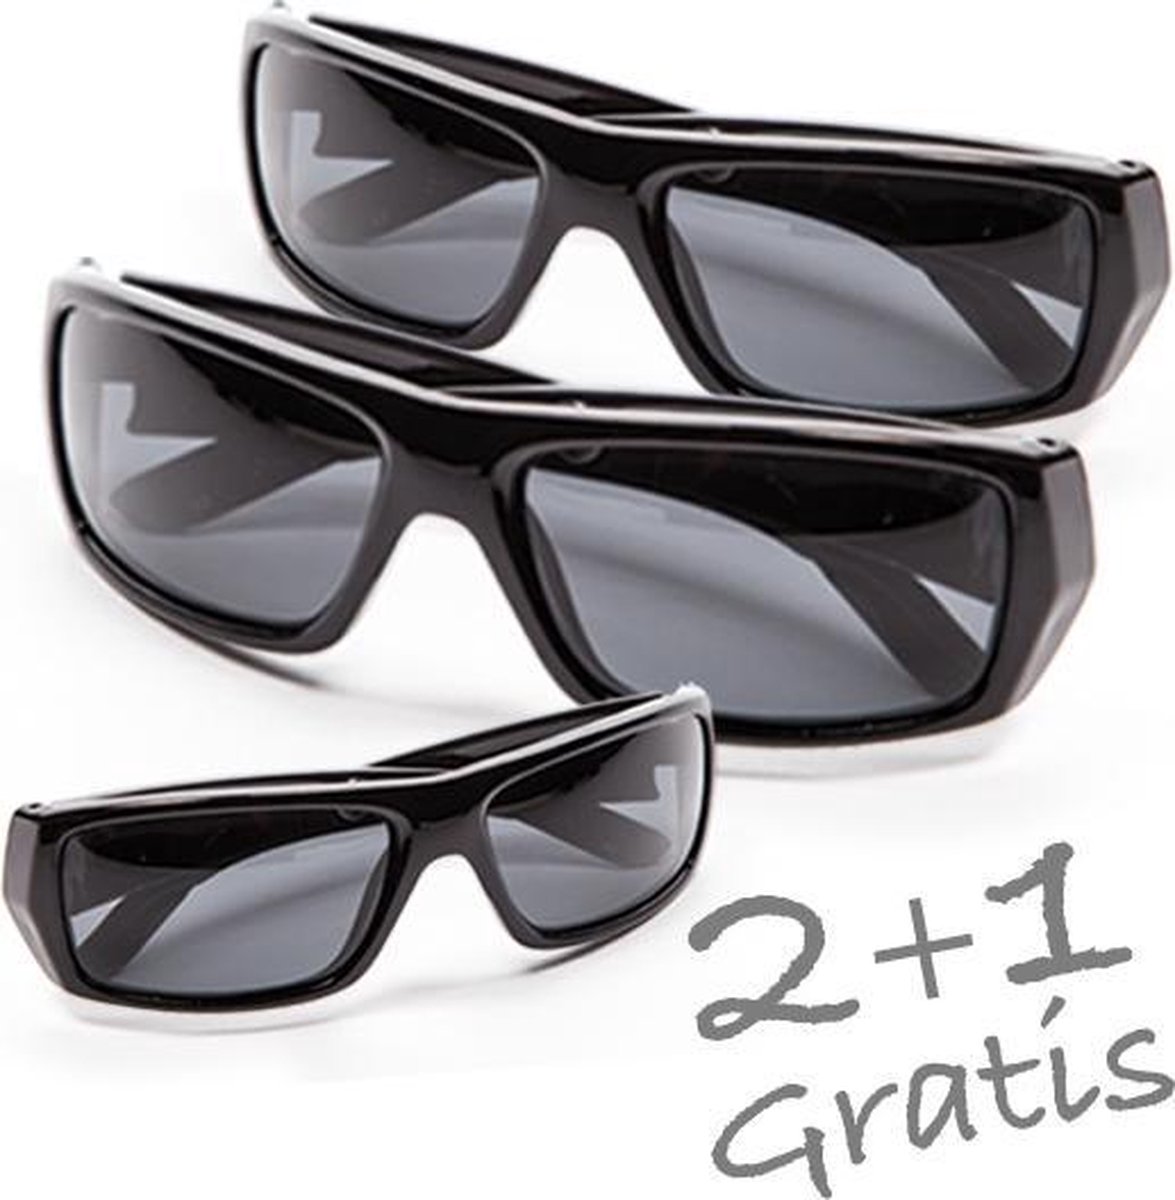 keten enkel schoonmaken Polaryte HD Zonnebril - 3 zwarte brillen + luxe brillenkoker | bol.com